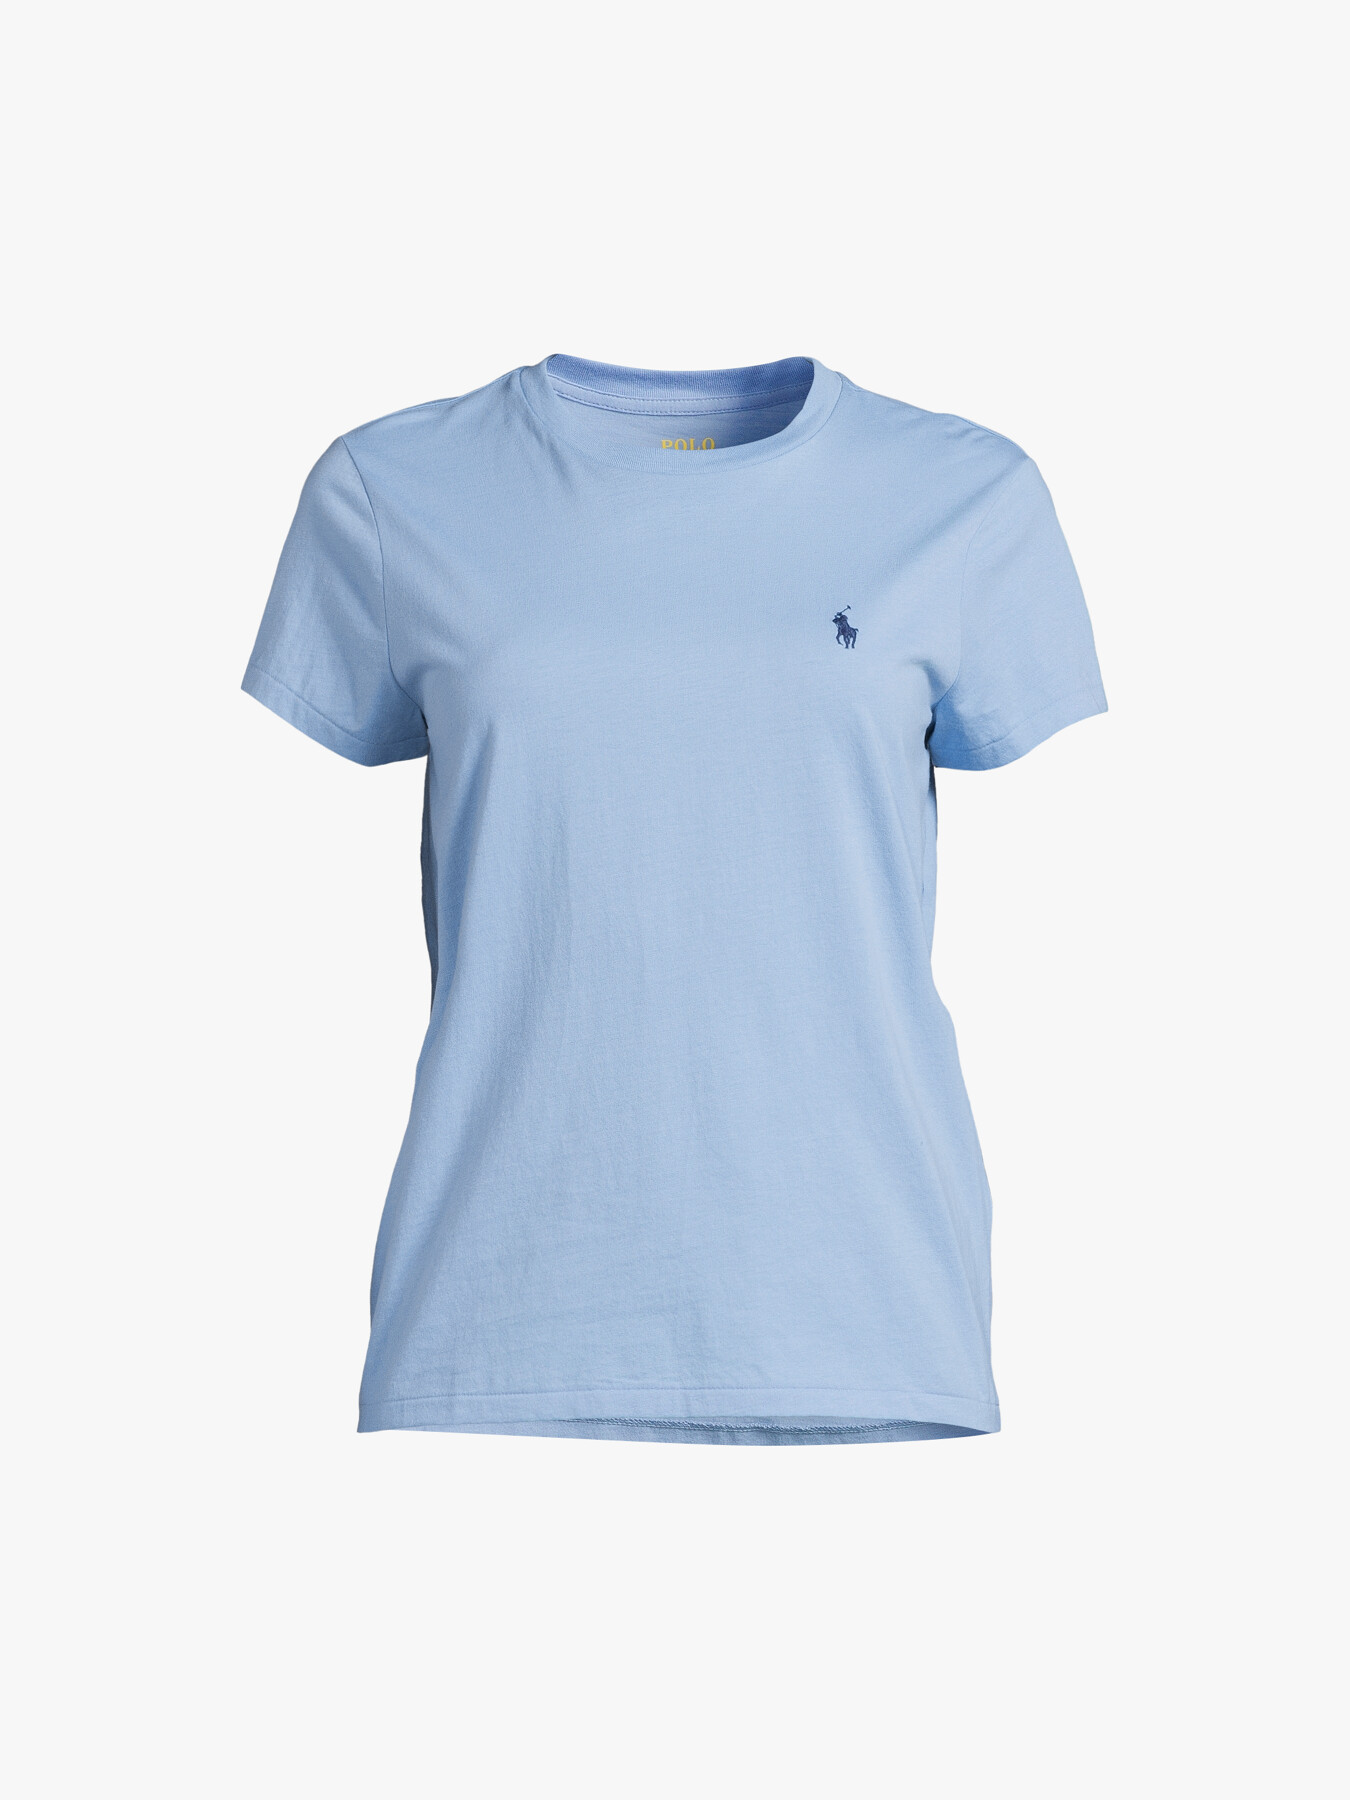 Women's Polo Ralph Lauren Short Sleeve T-Shirt | Fenwick